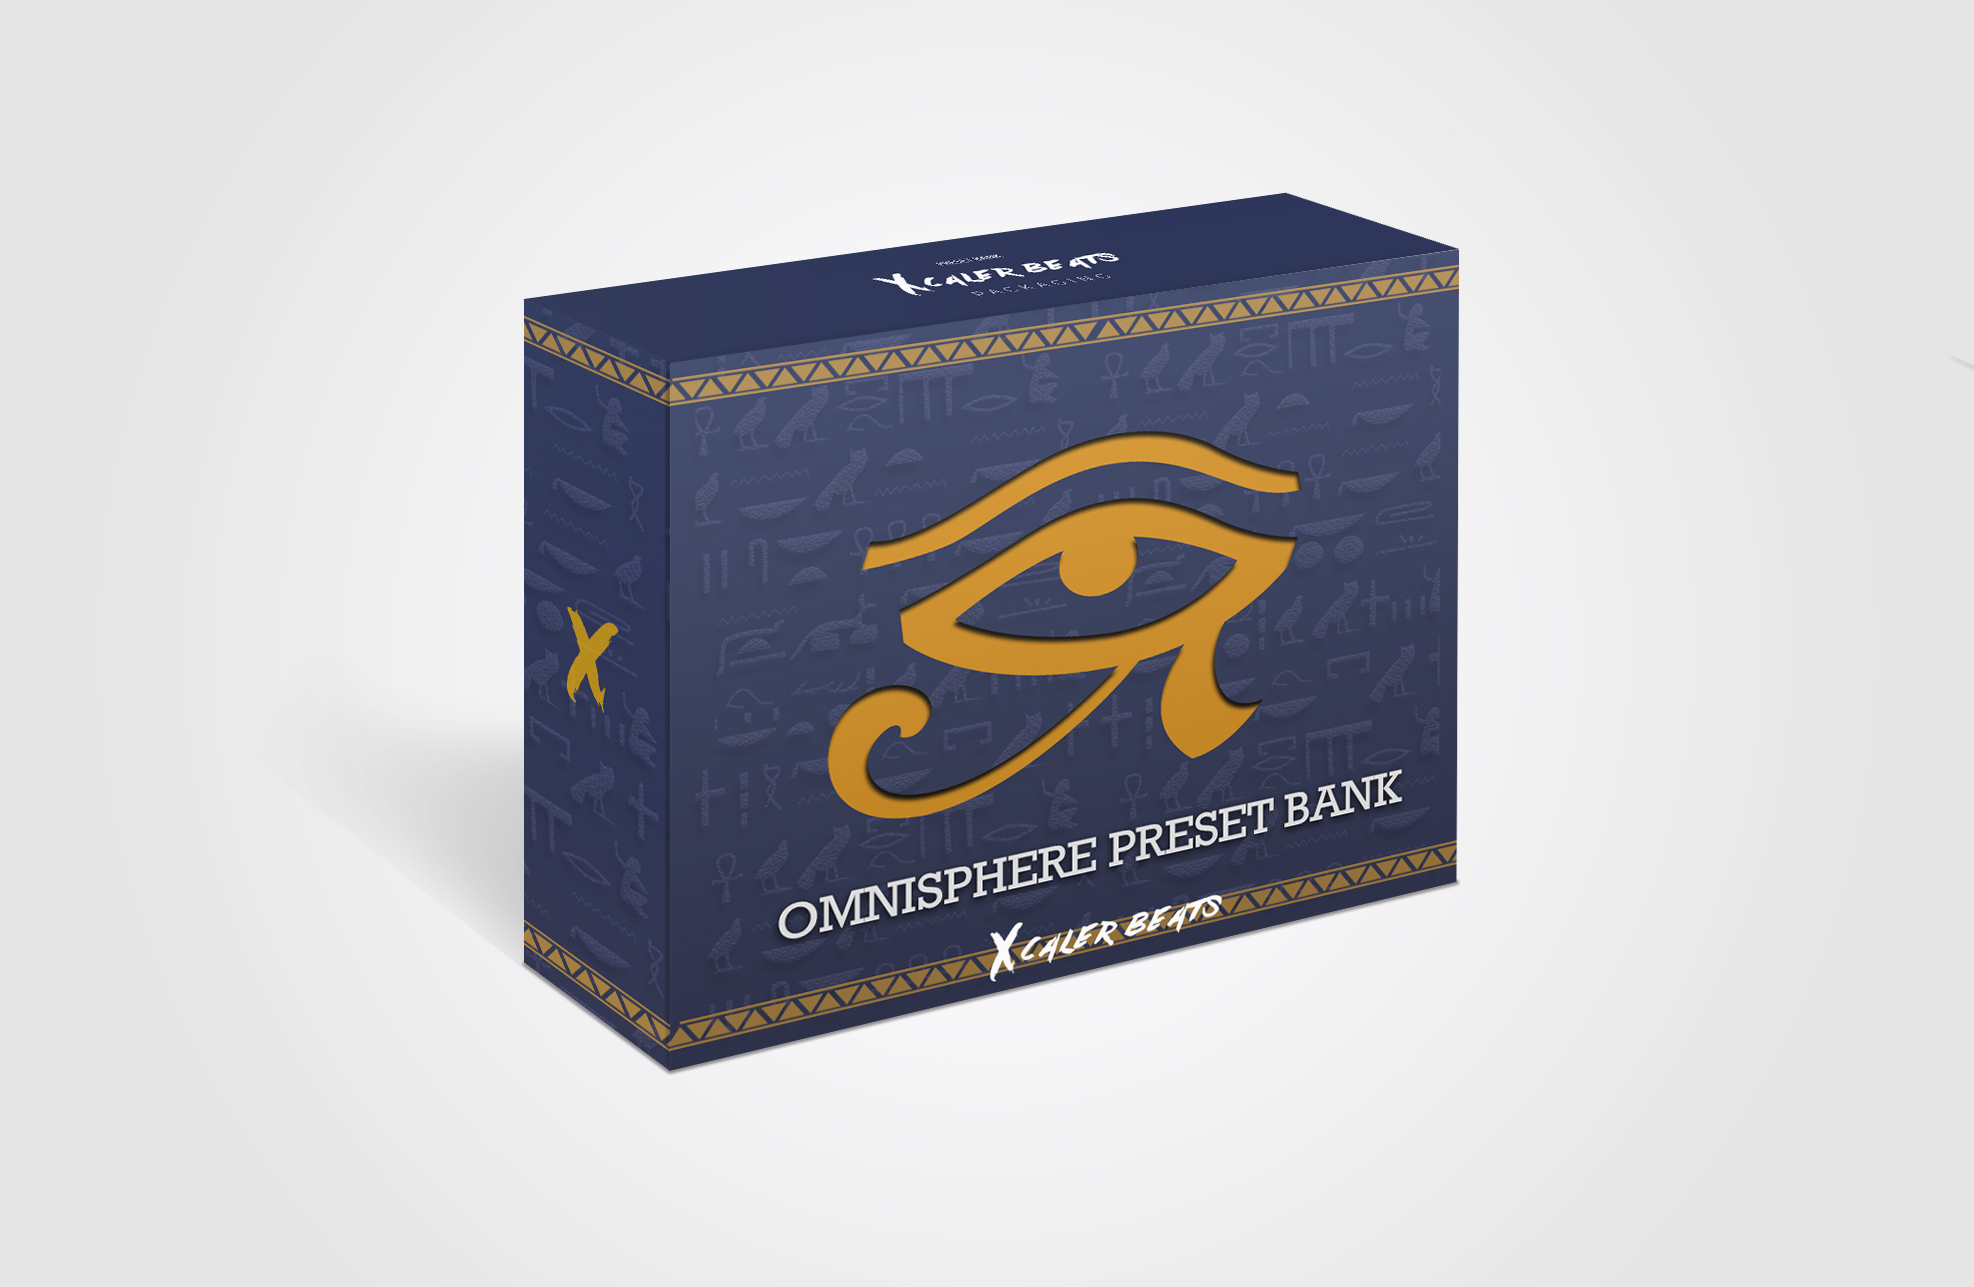 Omnisphere 2 Presets Bank